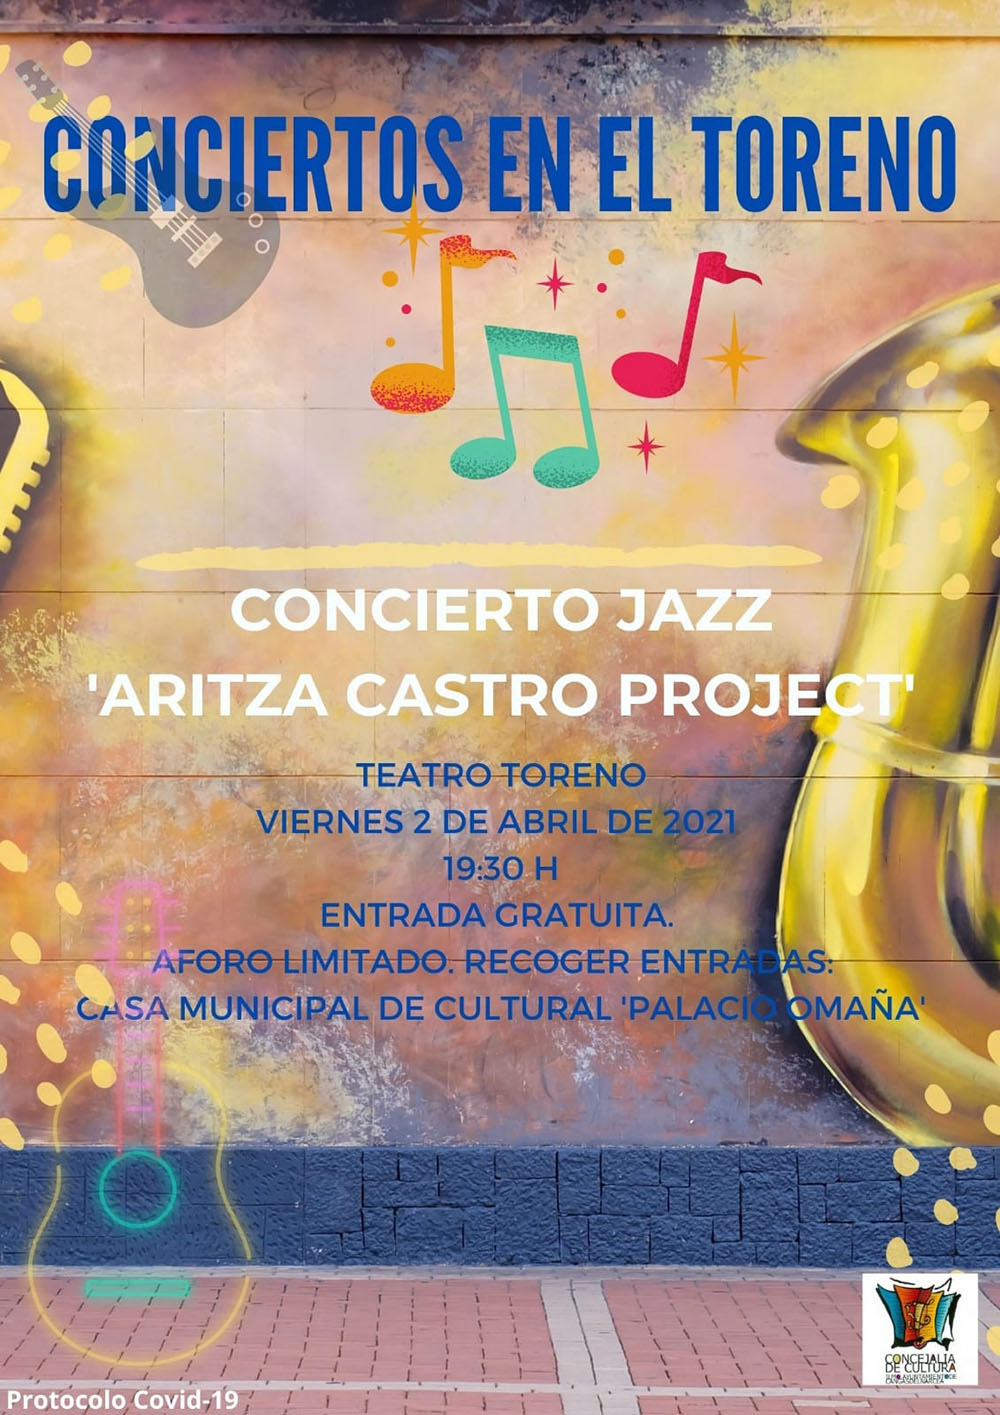 Aritza Castro Projet’ en Cangas del Narcea